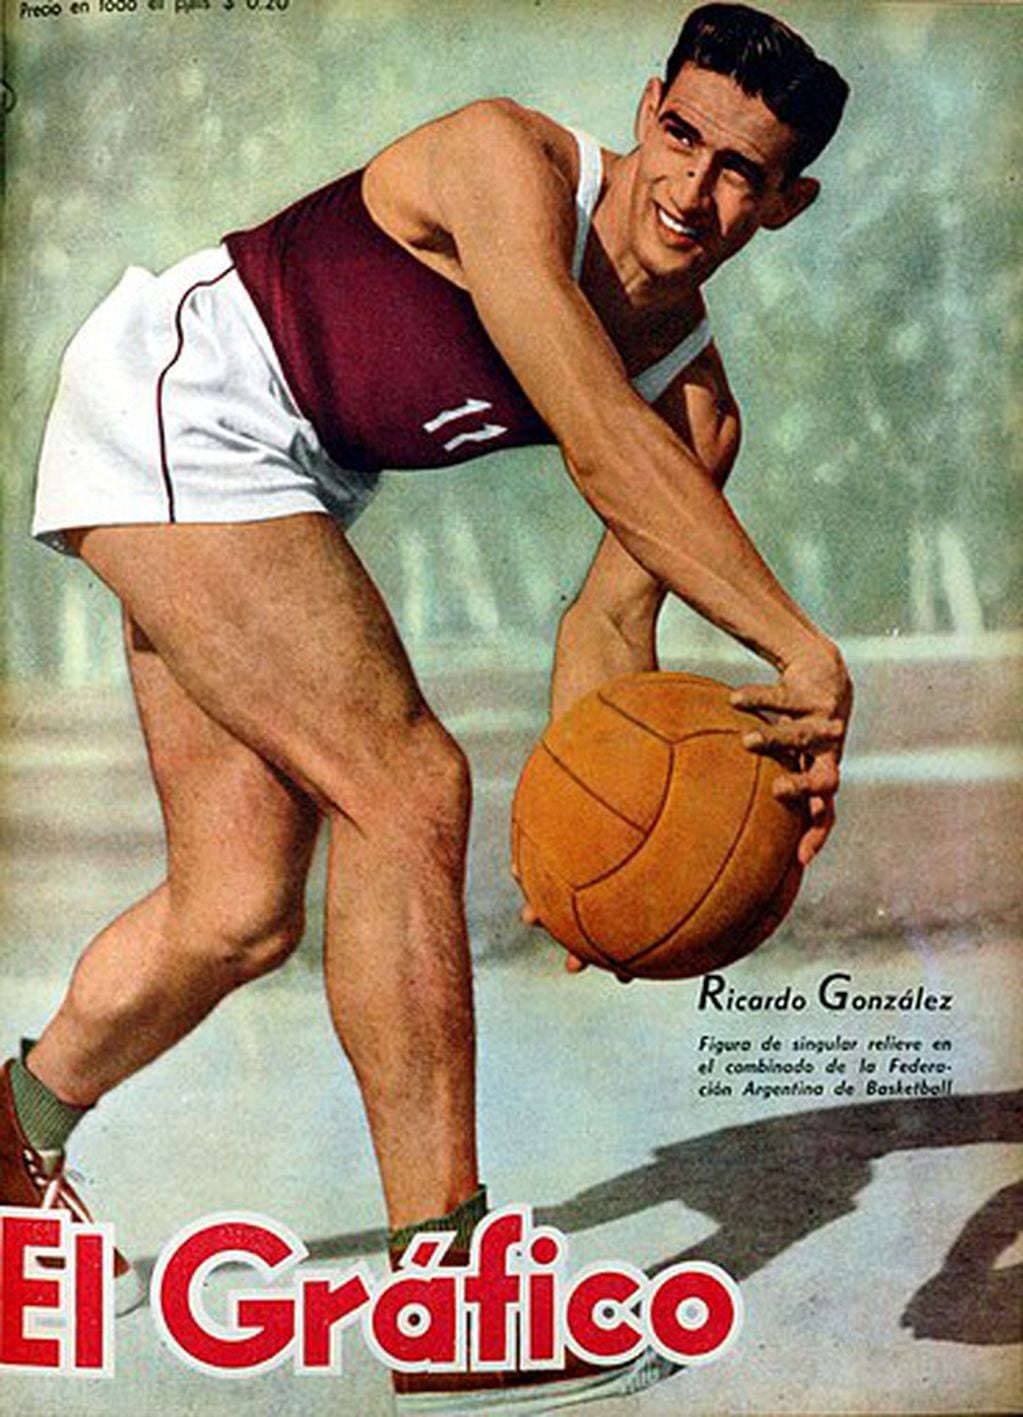 Ricardo en 1950, tapa de El Gráfico. Figura y líder. / Gentileza.